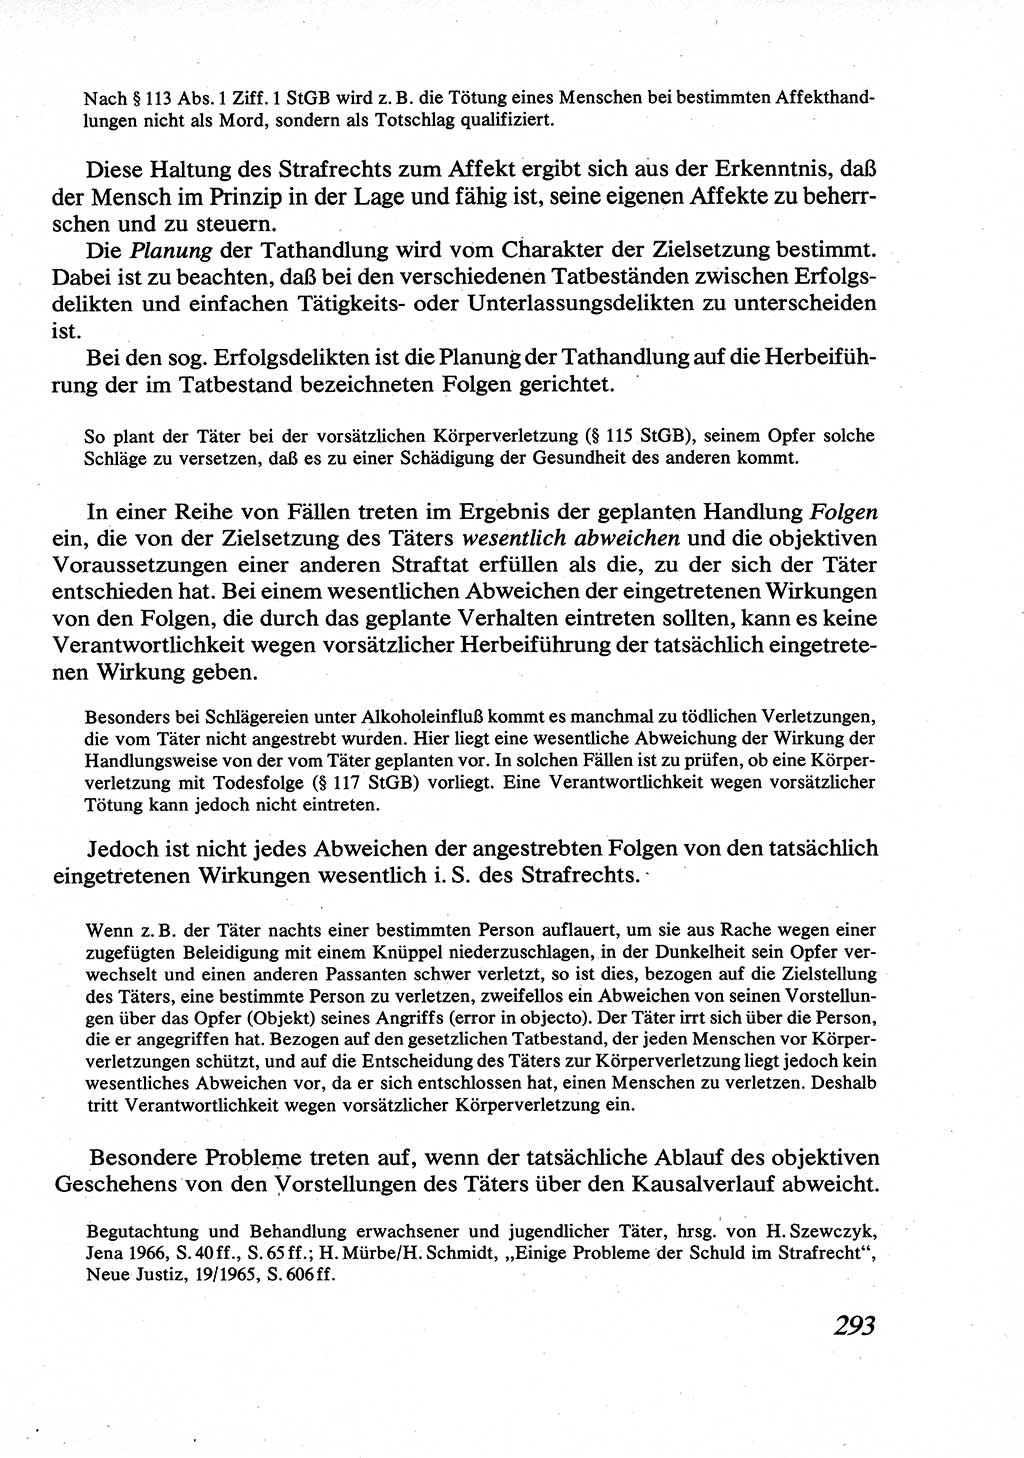 Strafrecht [Deutsche Demokratische Republik (DDR)], Allgemeiner Teil, Lehrbuch 1976, Seite 293 (Strafr. DDR AT Lb. 1976, S. 293)